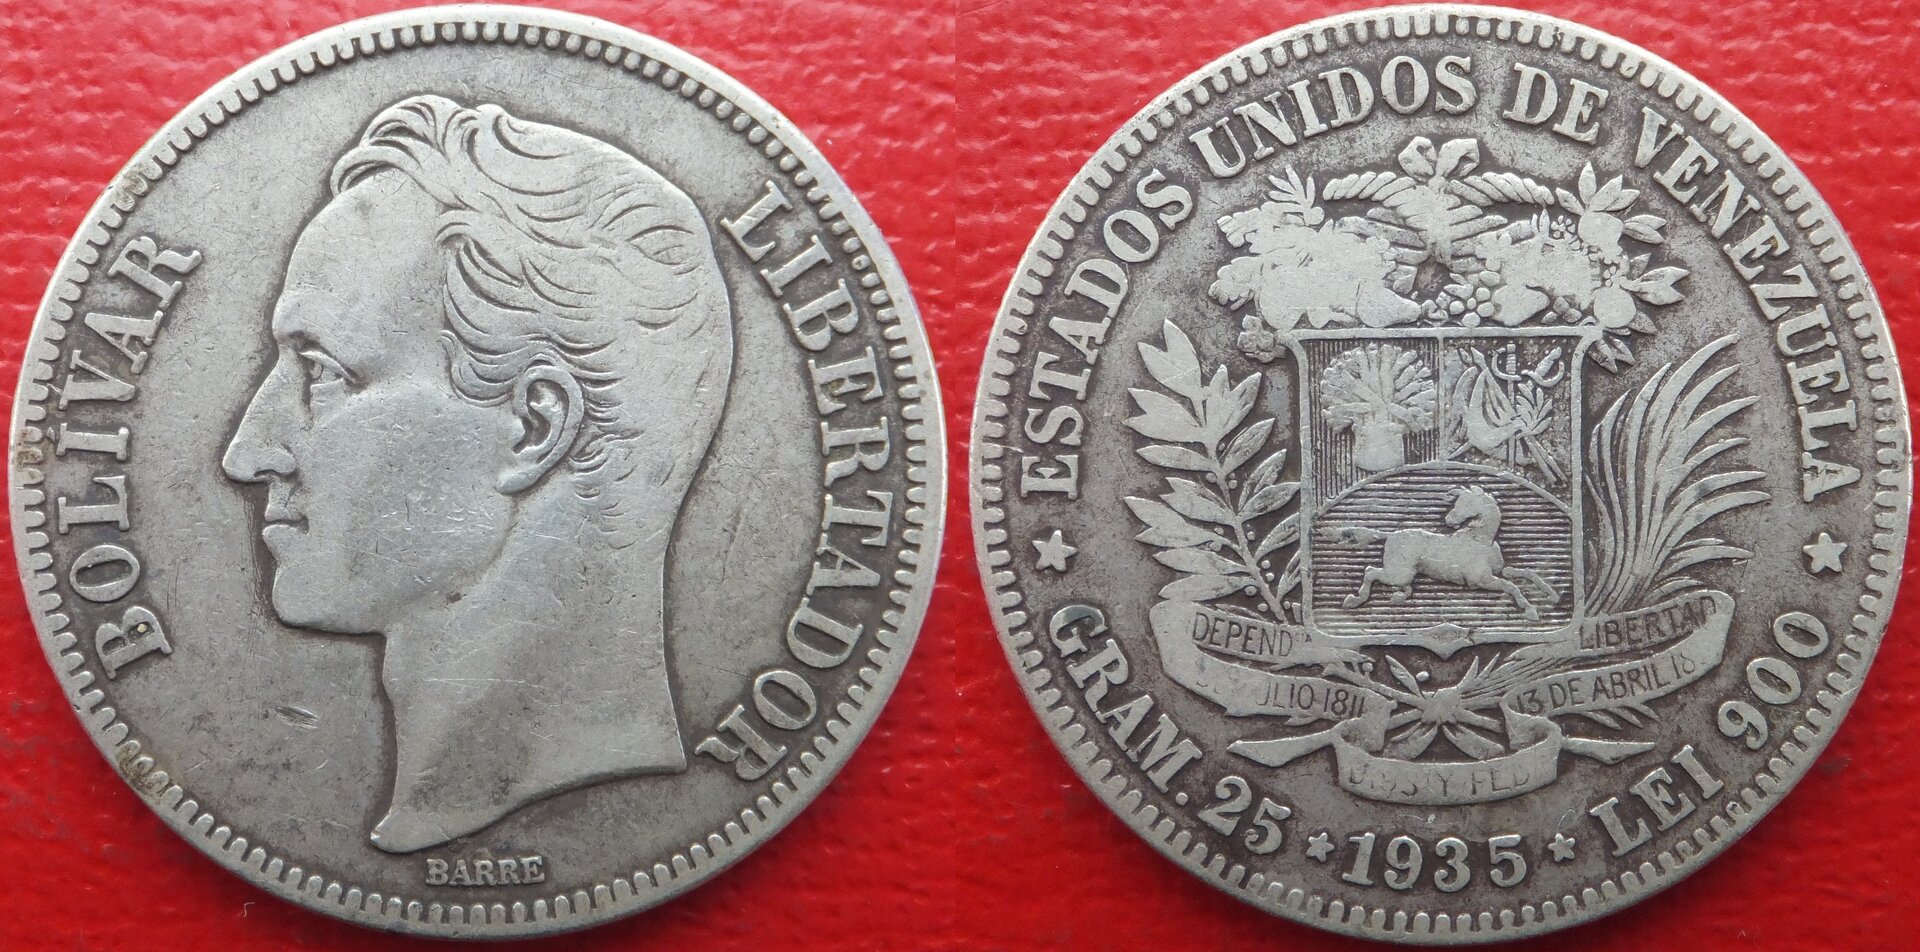 Venezuela 5 bolivares 1935 (3).jpg